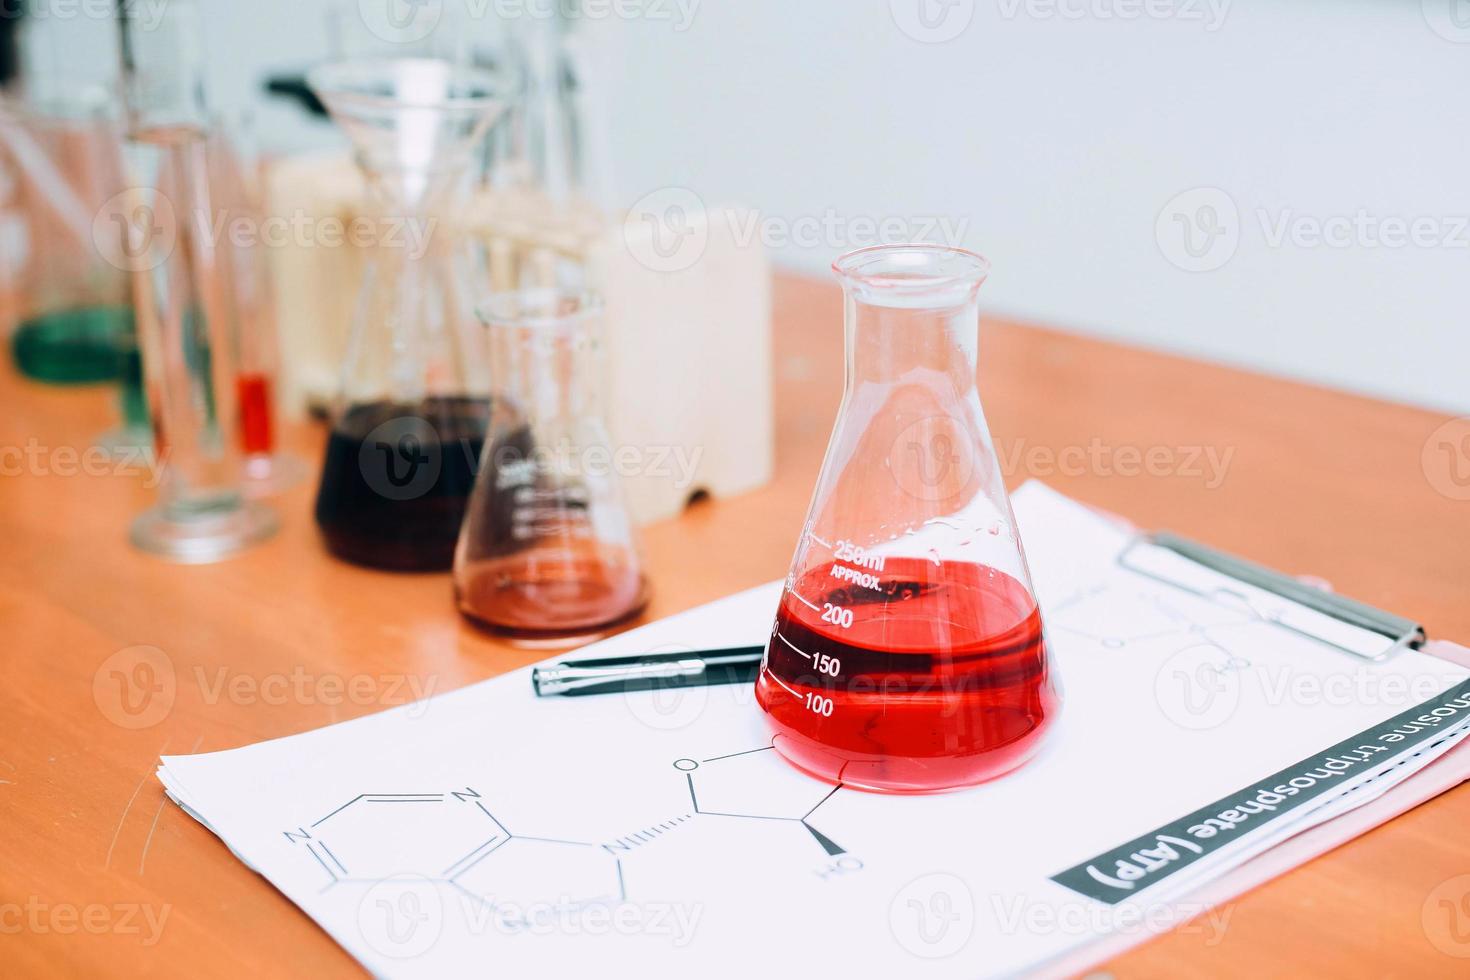 röd vätska på bägare med labbutrustning på bordet. nationella vetenskapsdag, världsvetenskapsdag foto